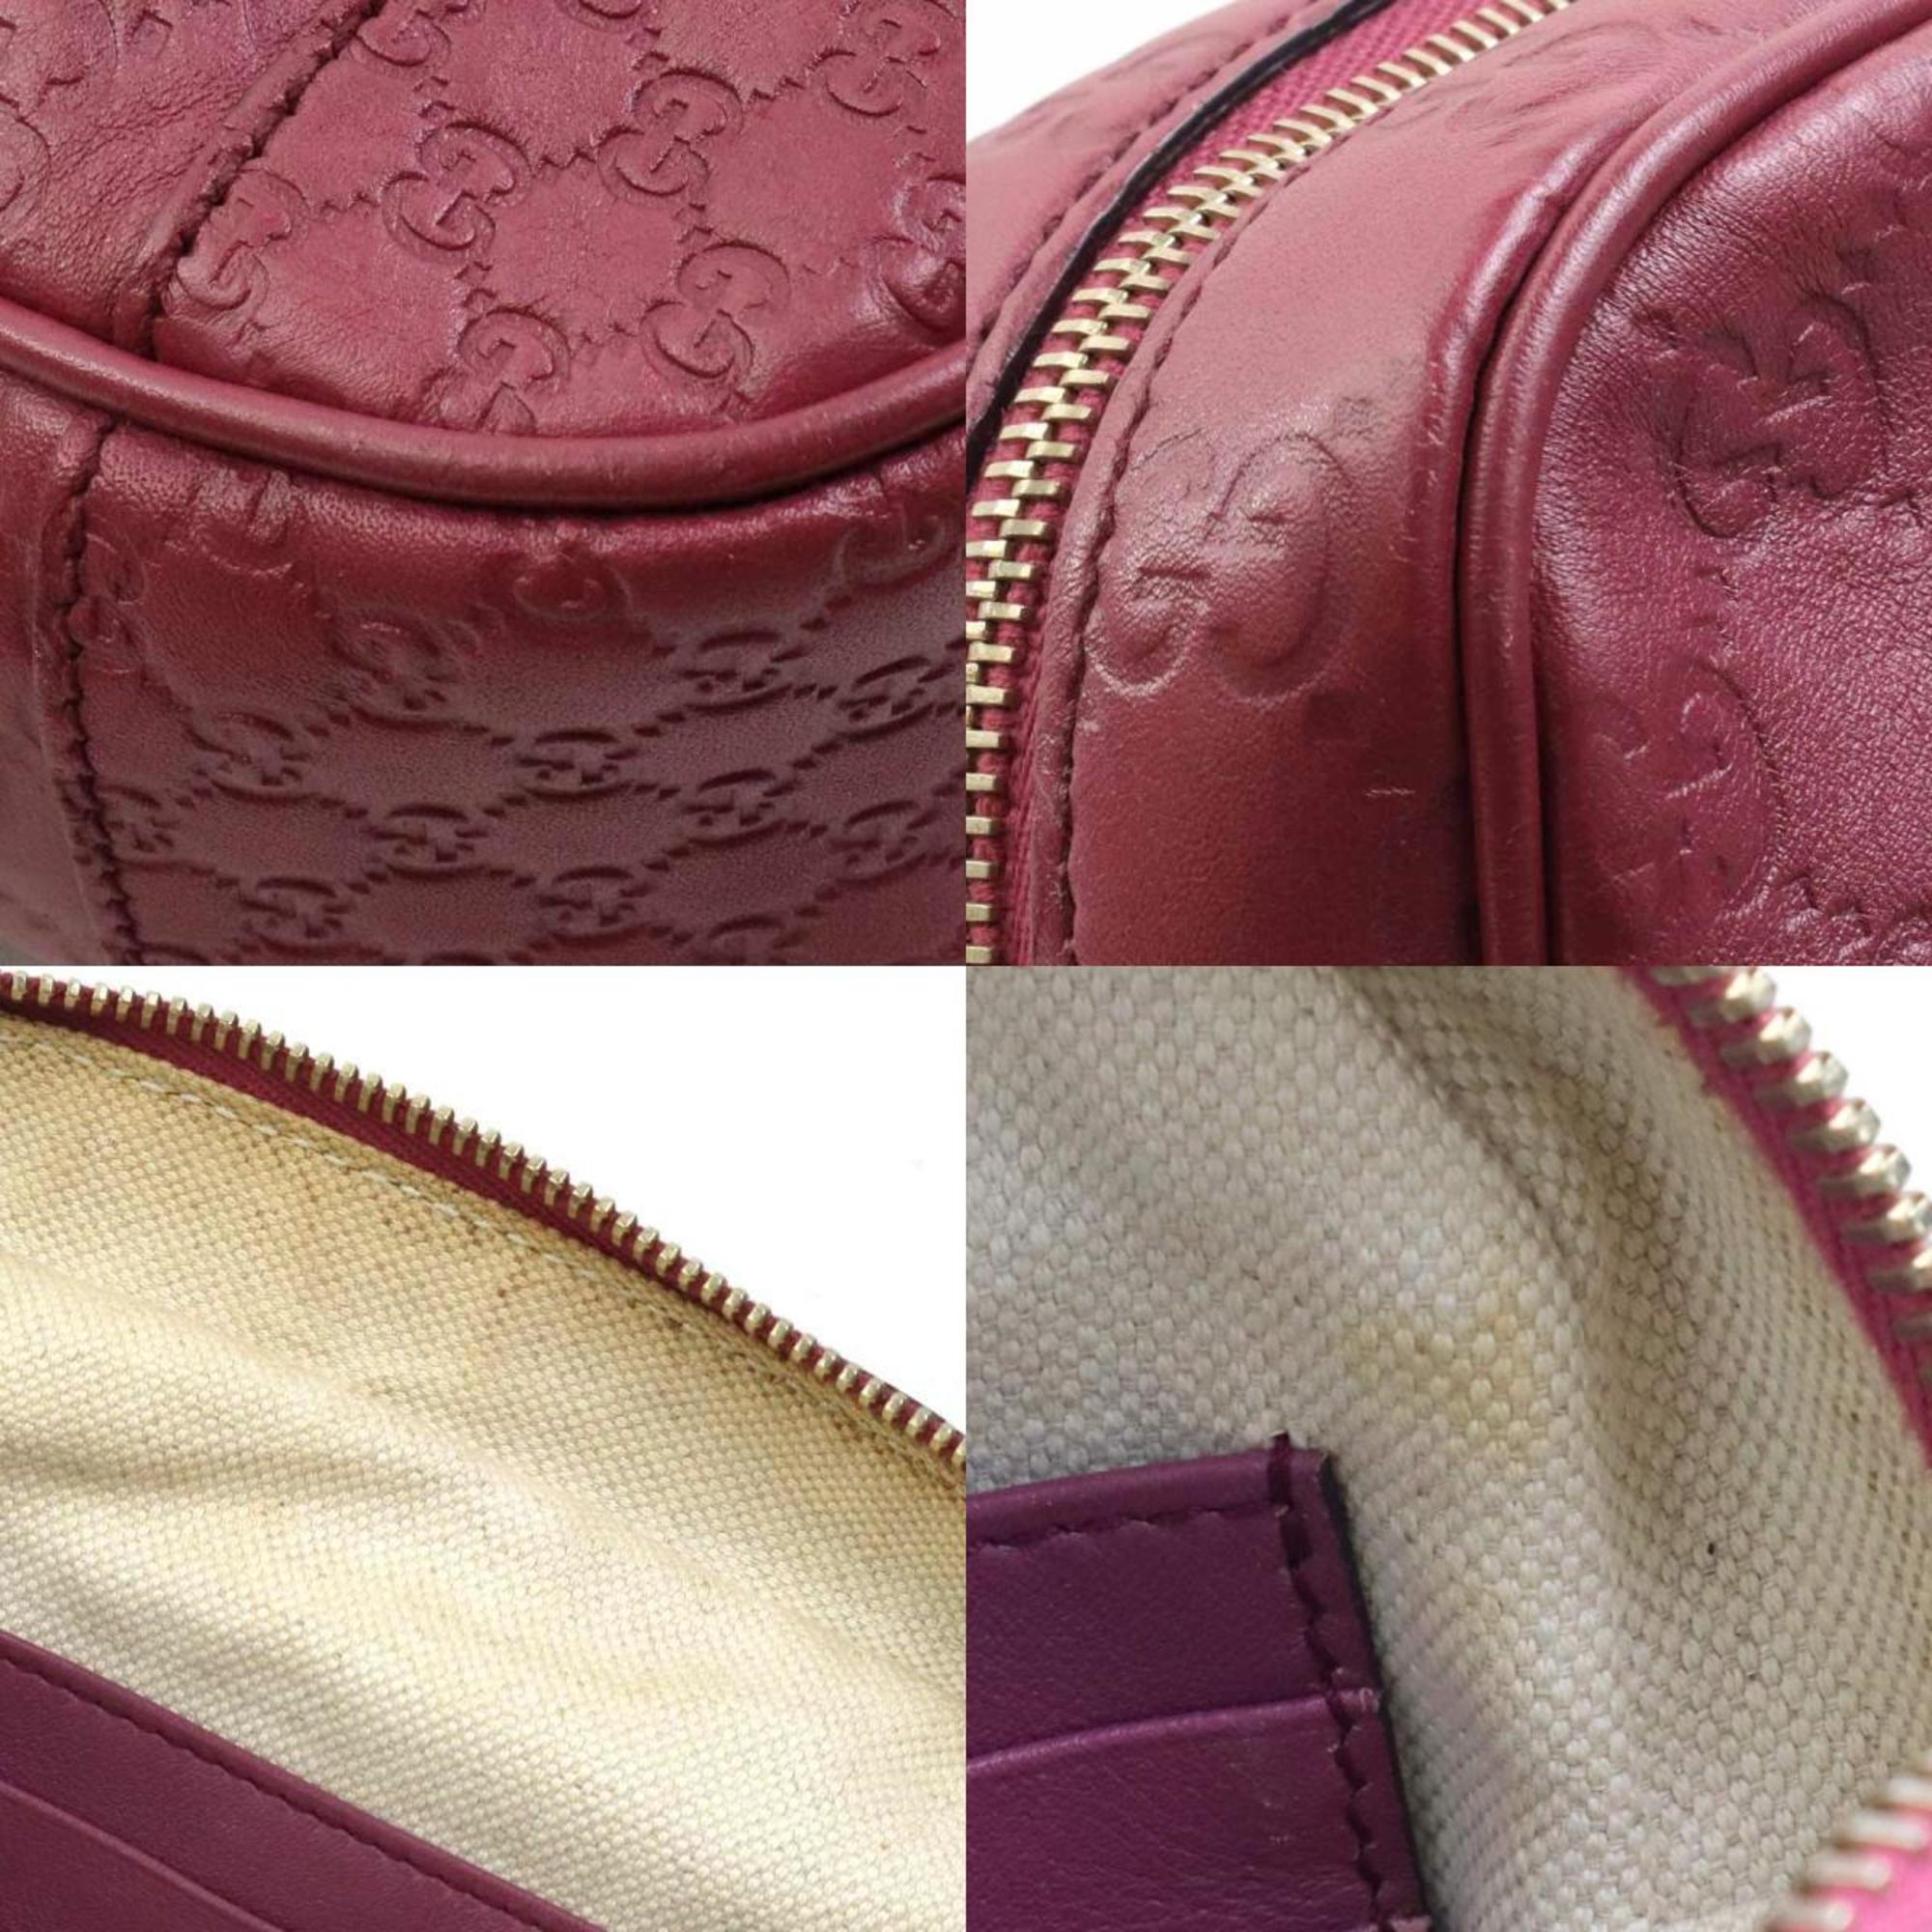 GUCCI Shoulder Bag Guccissima x Micro Leather Dark Purple Red Women's 387360 e58718a